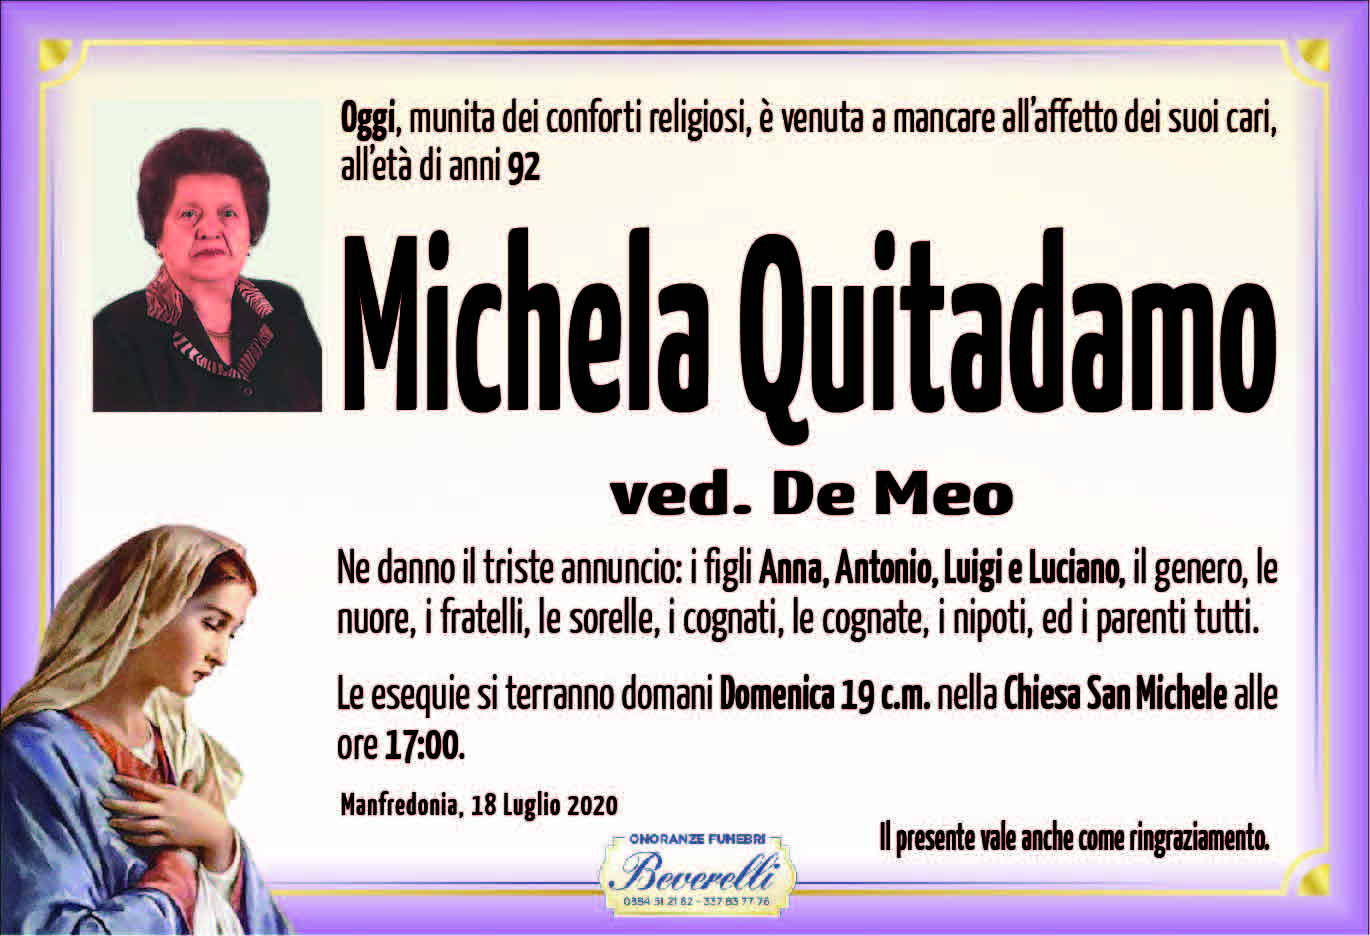 Michela Quitadamo